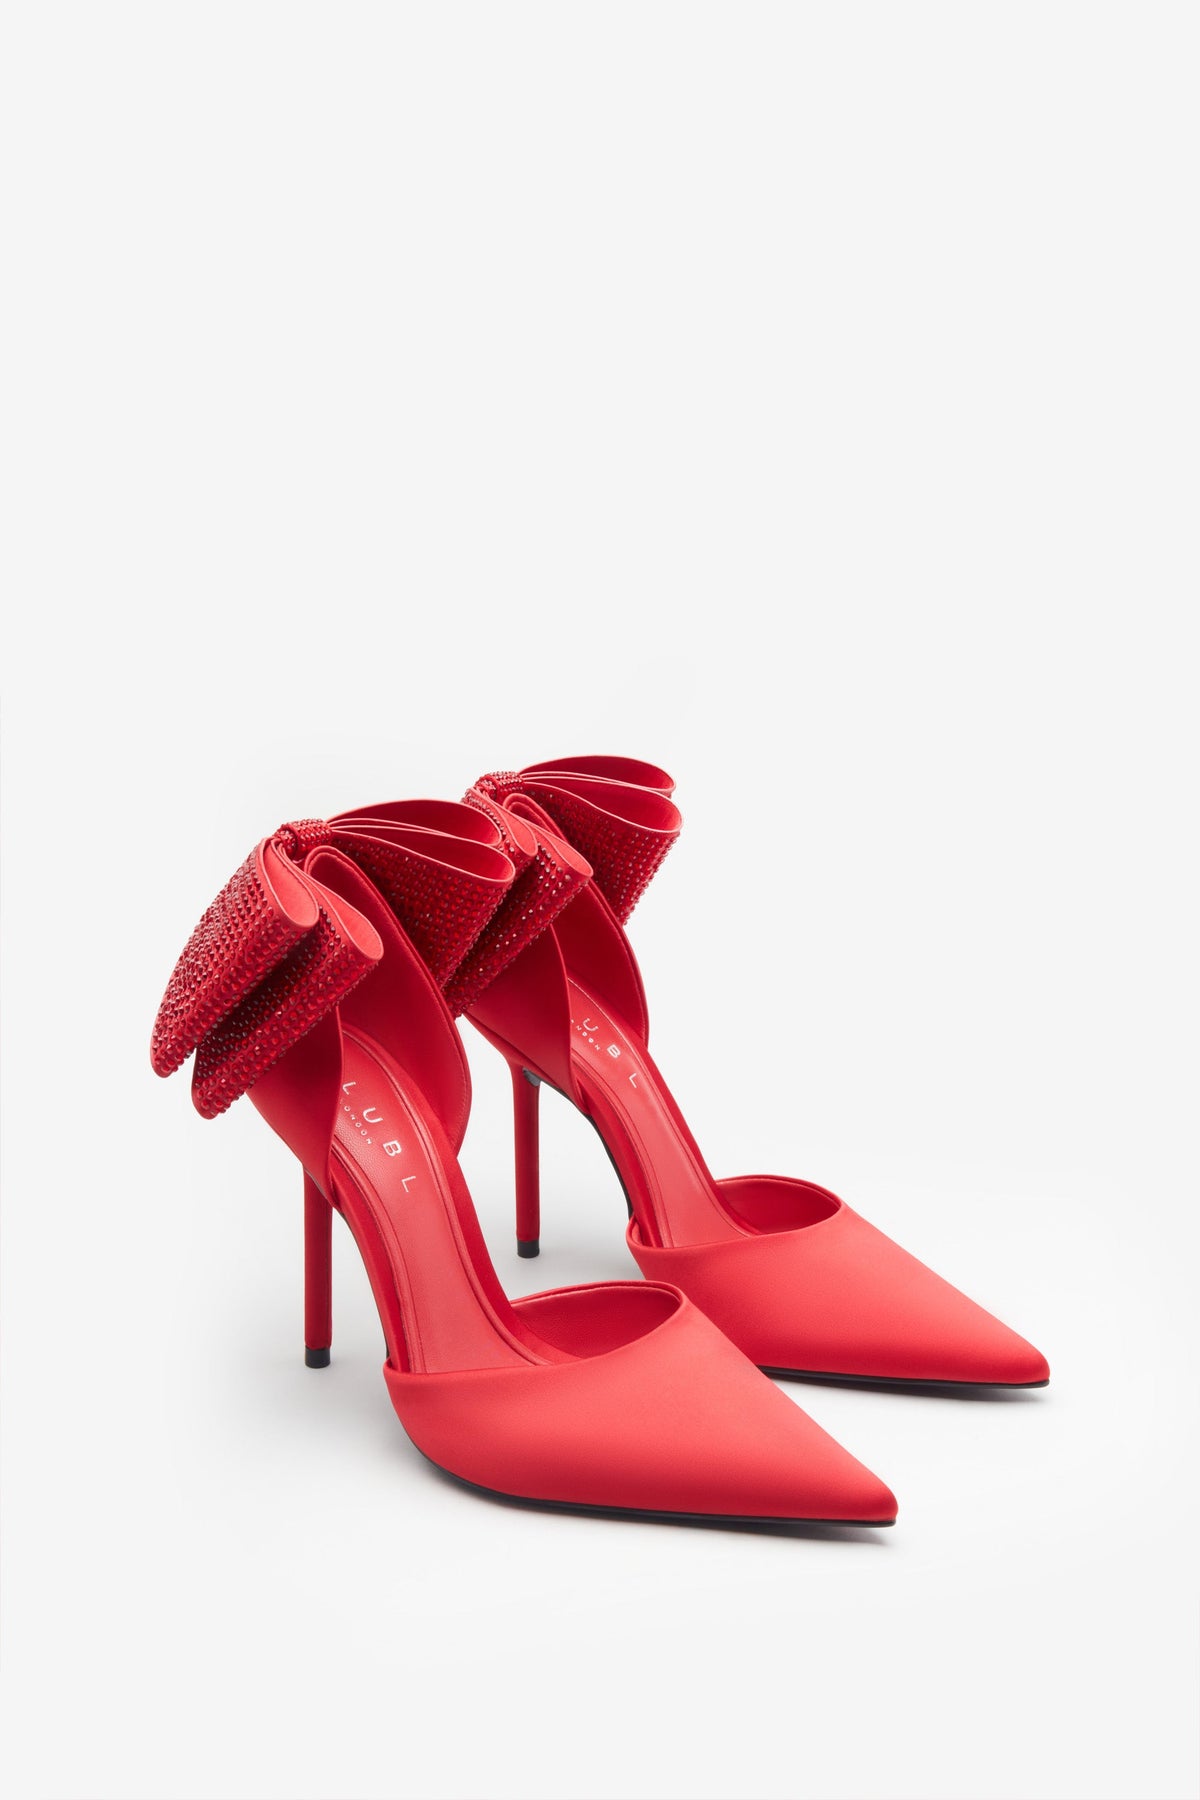 Buffalo London shoes women high heels size 8 | eBay